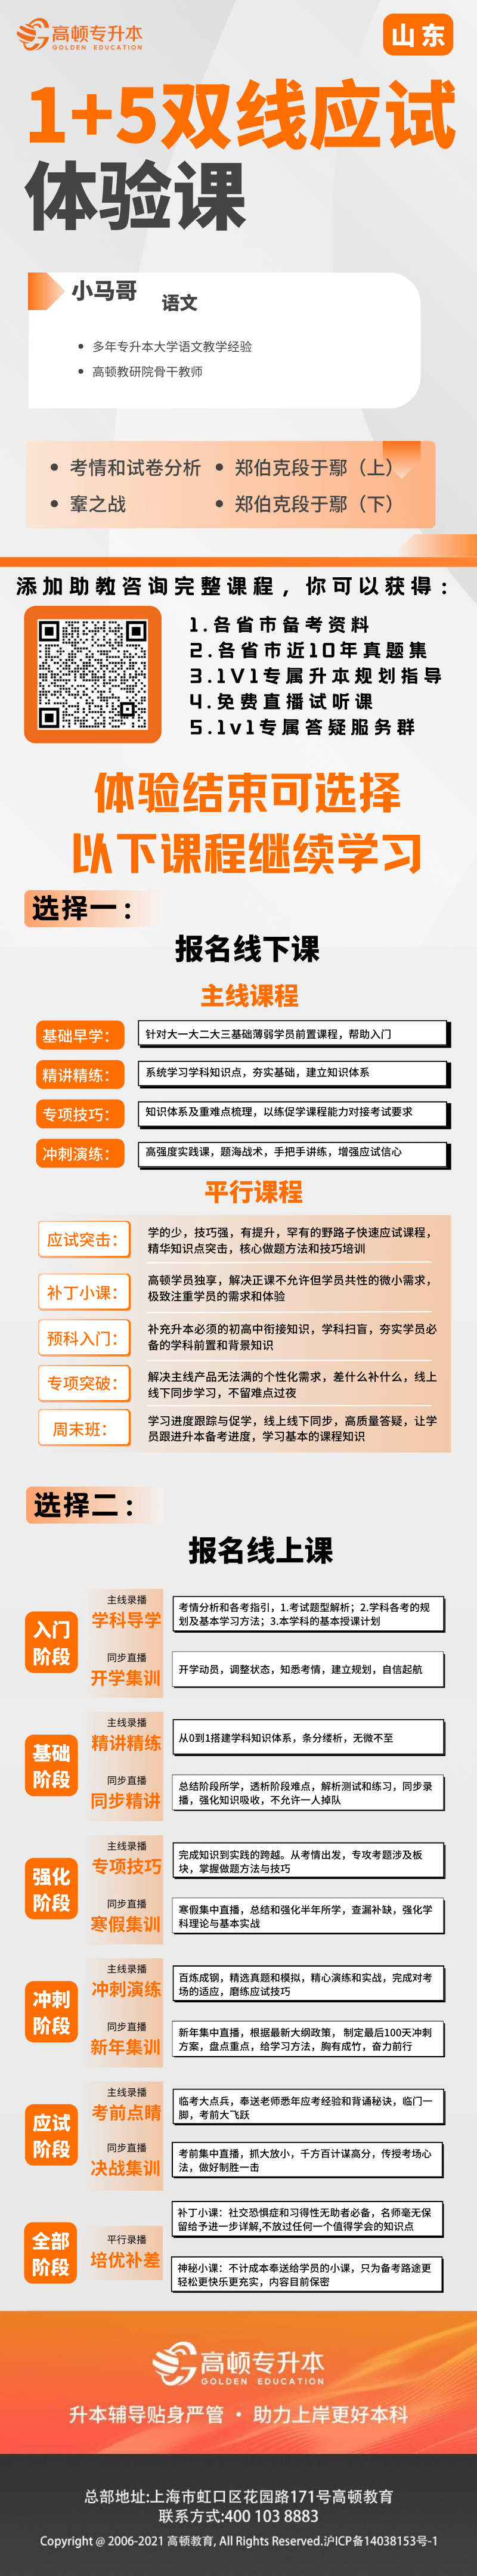 https://simg01.gaodunwangxiao.com/uploadfiles/product-center/202310/11/2cbc5_20231011174047.png